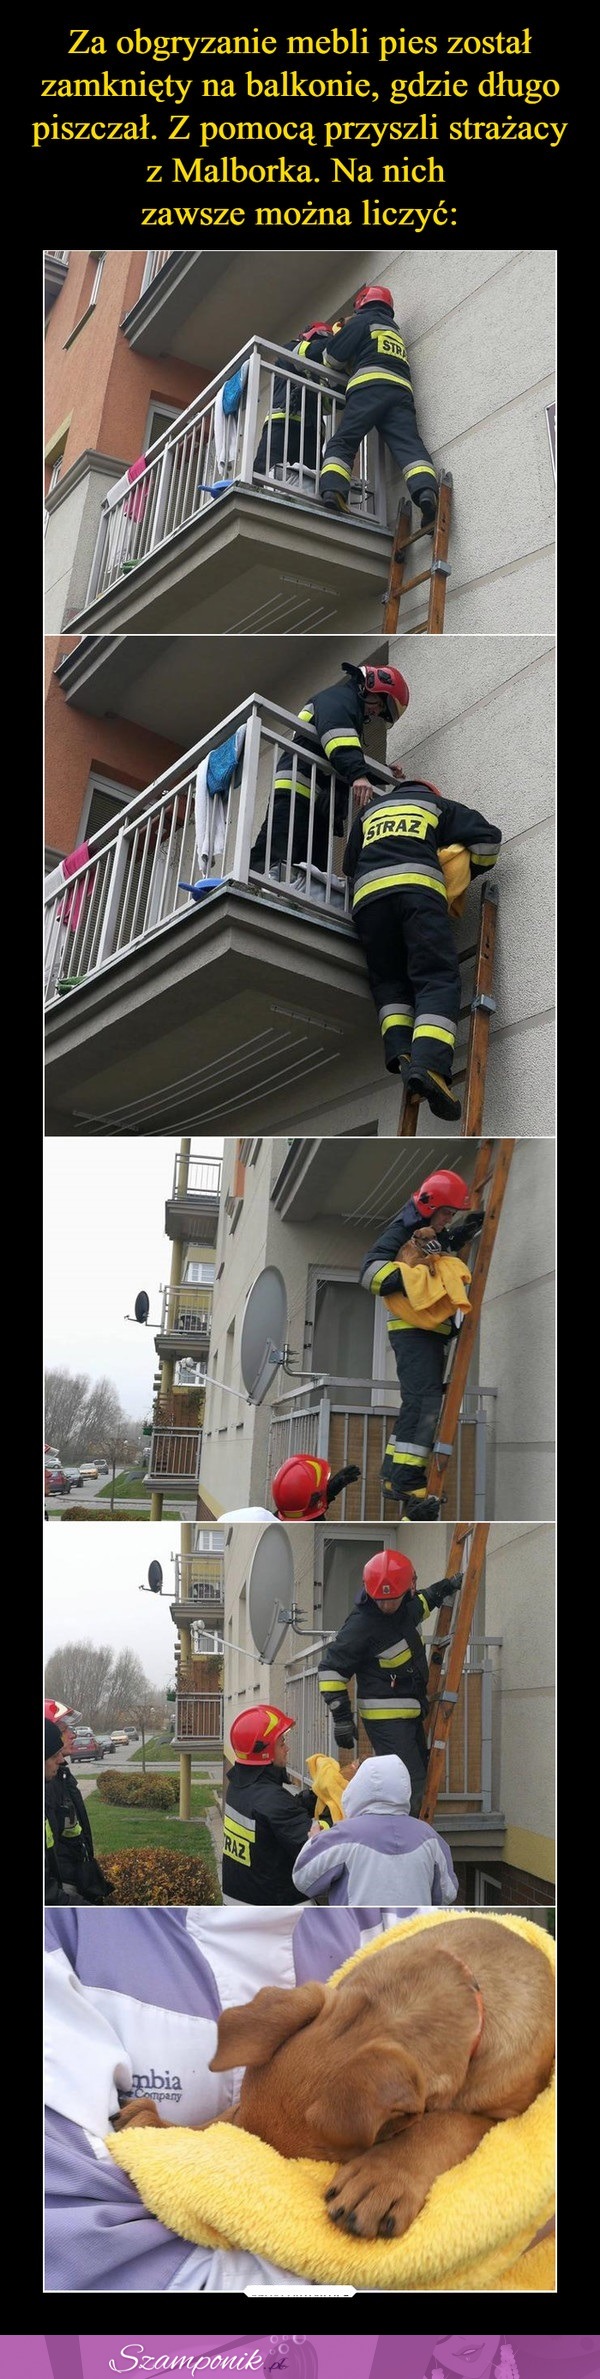 Za obgryzanie mebli pies został zamknięty na balkonie. Z pomocą przyszli strażacy! Na nich zawsze można liczyć!